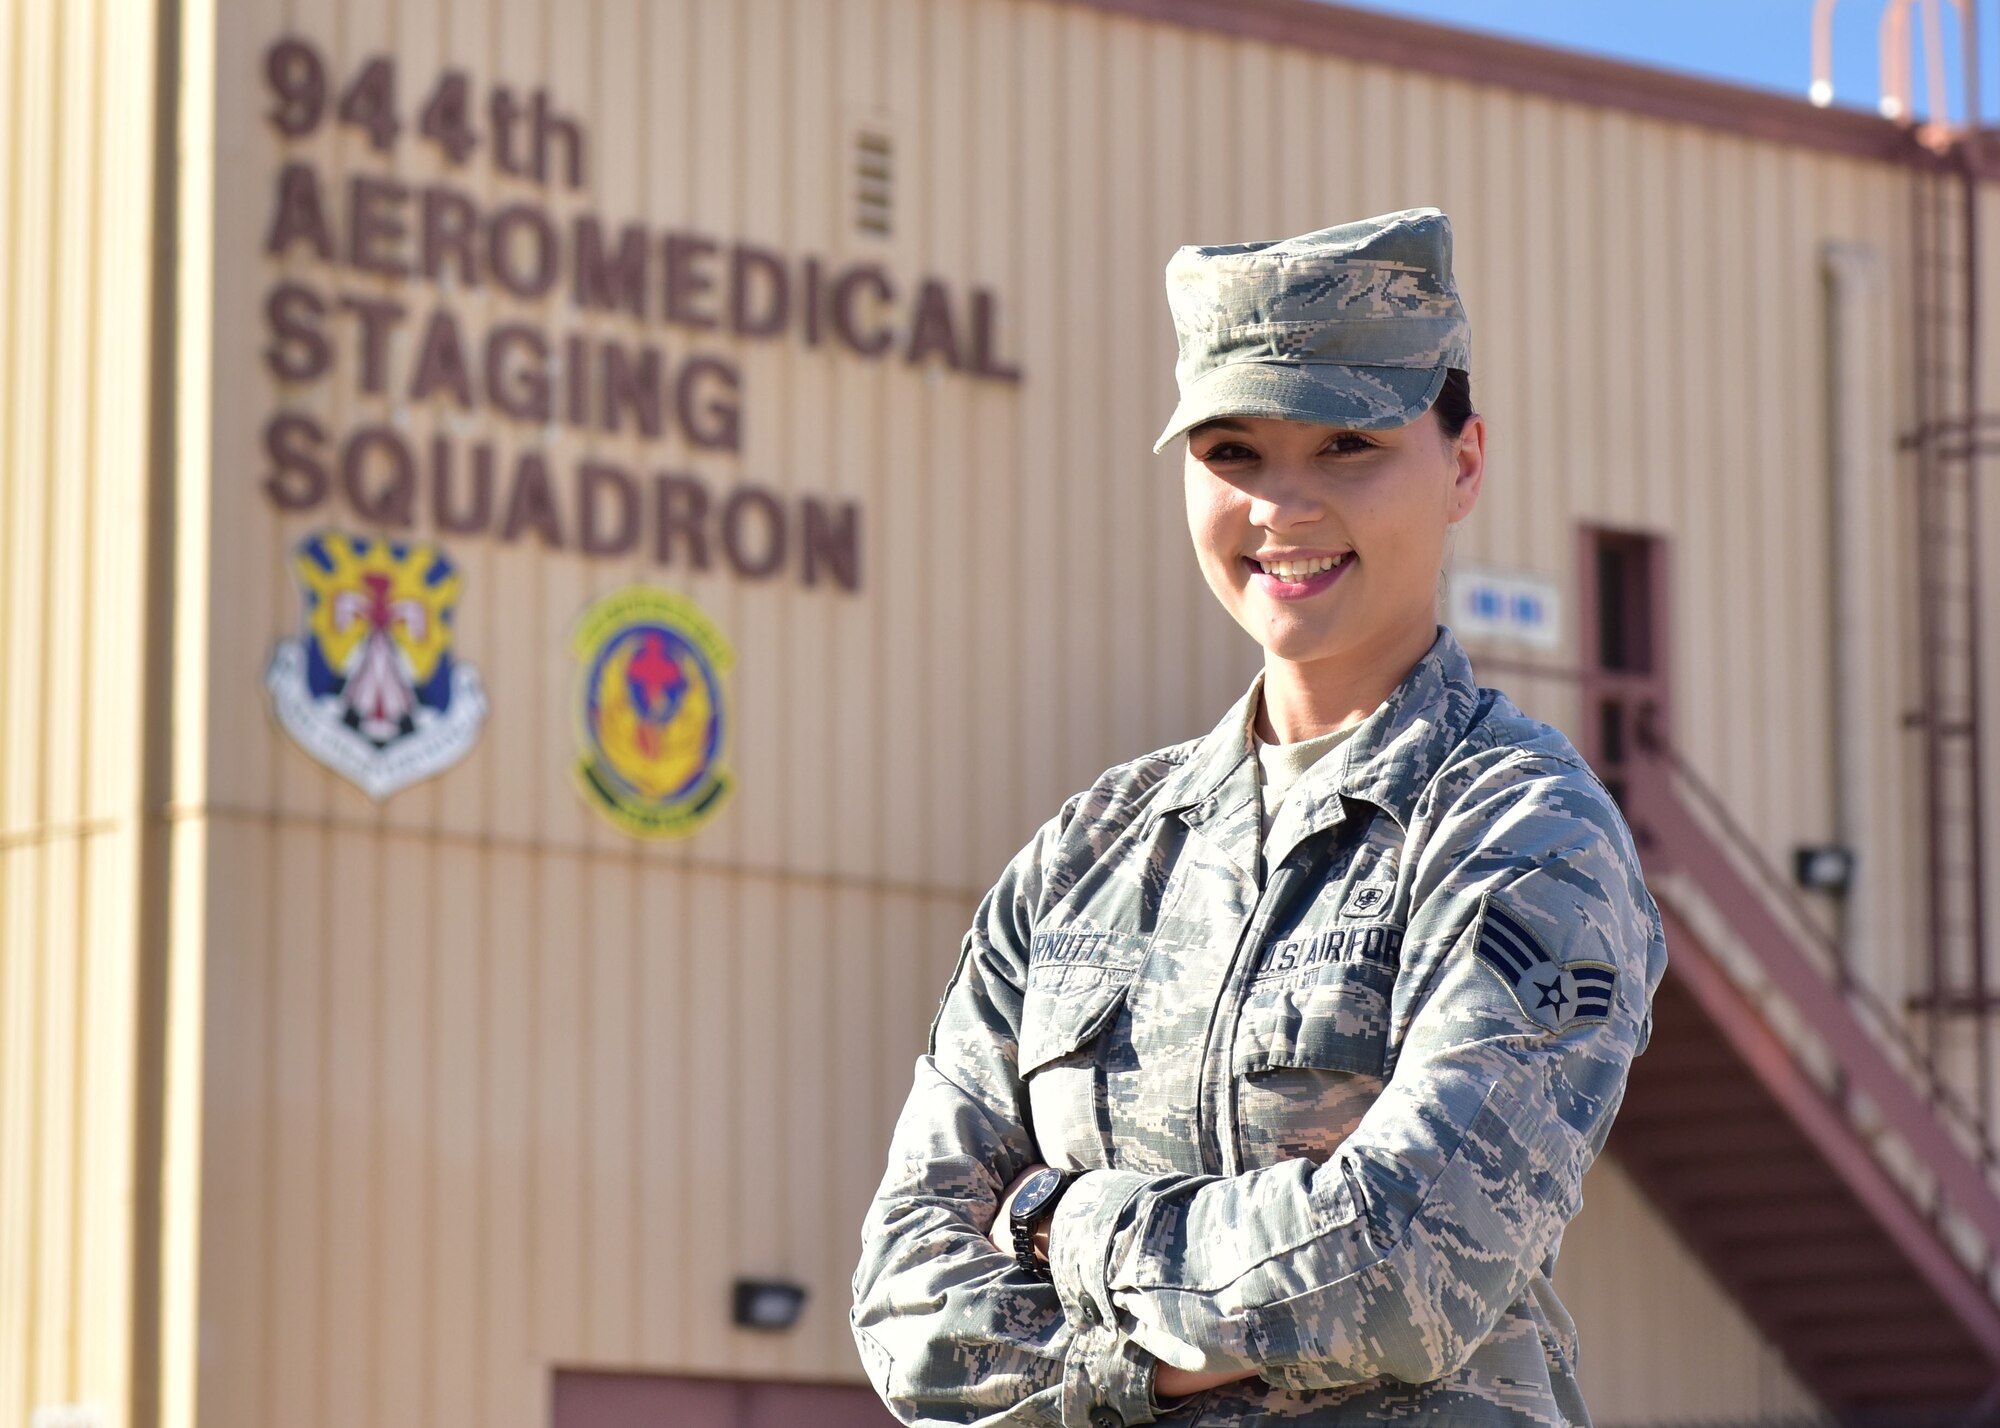 Warrior of the Month - Senior Airman Catelynn Curnutt